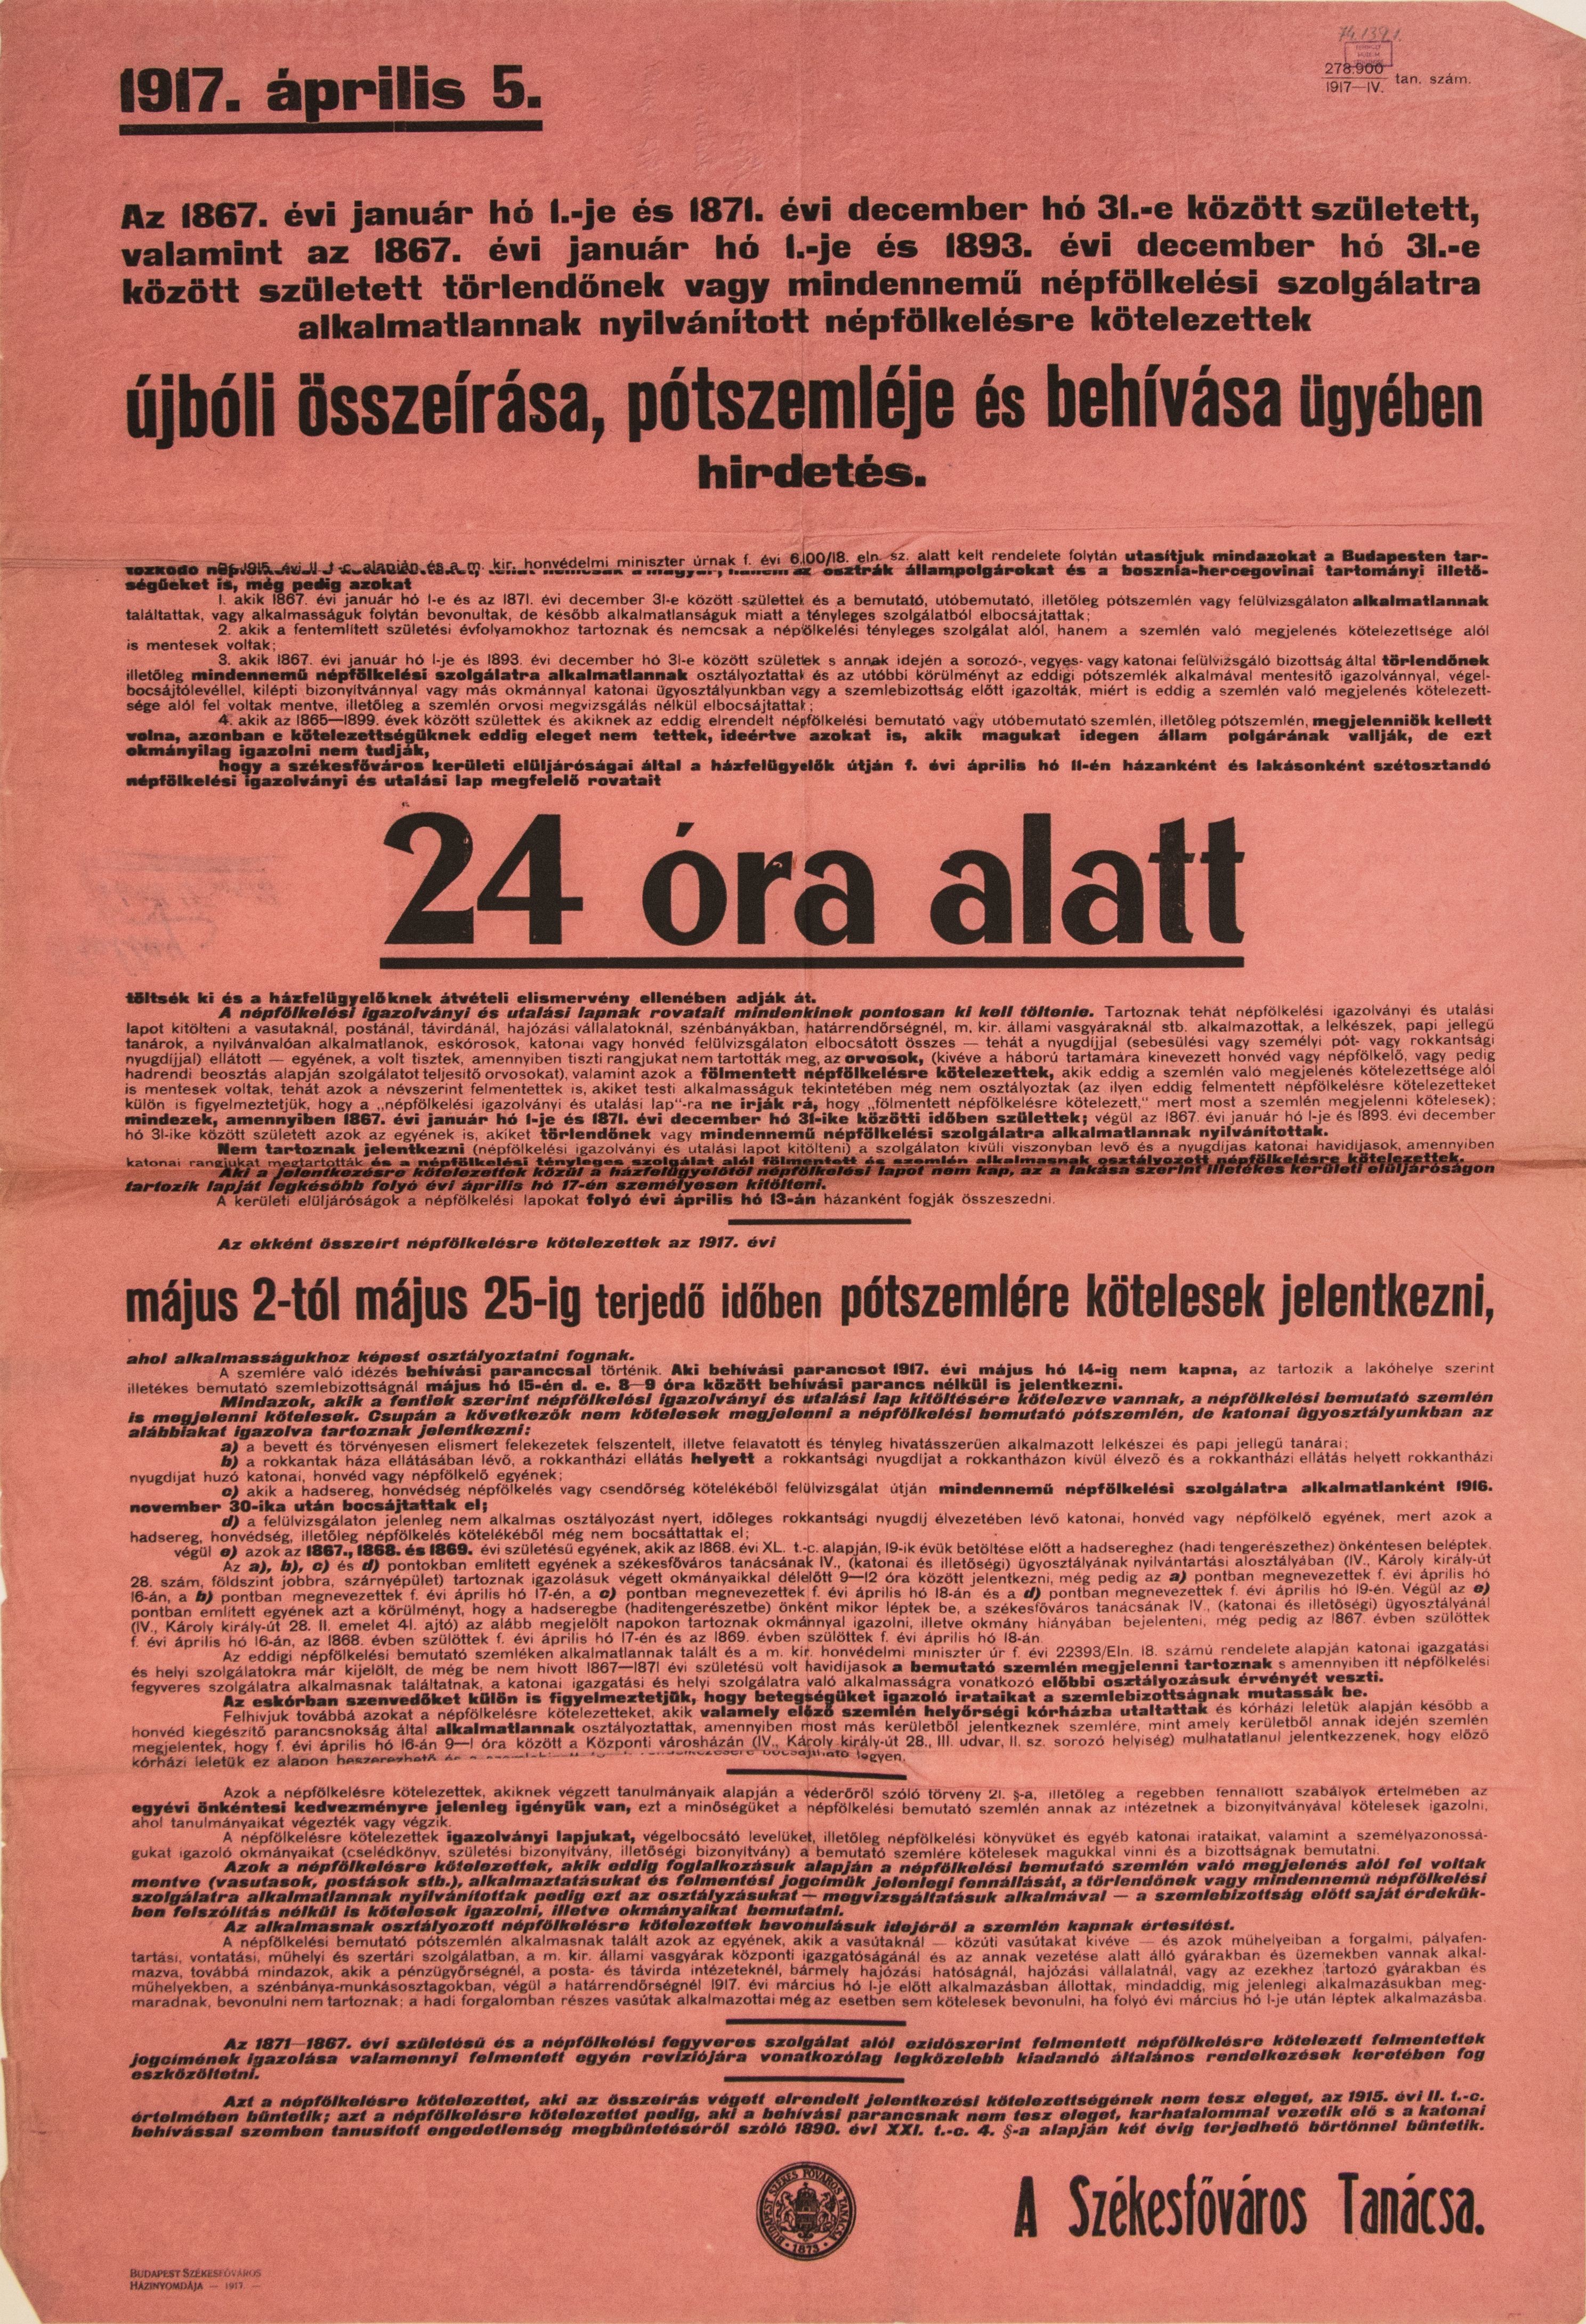 Népfelkelésre alkalmatlannak nyilvánítottak újbóli összeírása, 1917.04.05. (hirdetmény) (Ferenczy Múzeumi Centrum CC BY-NC-SA)